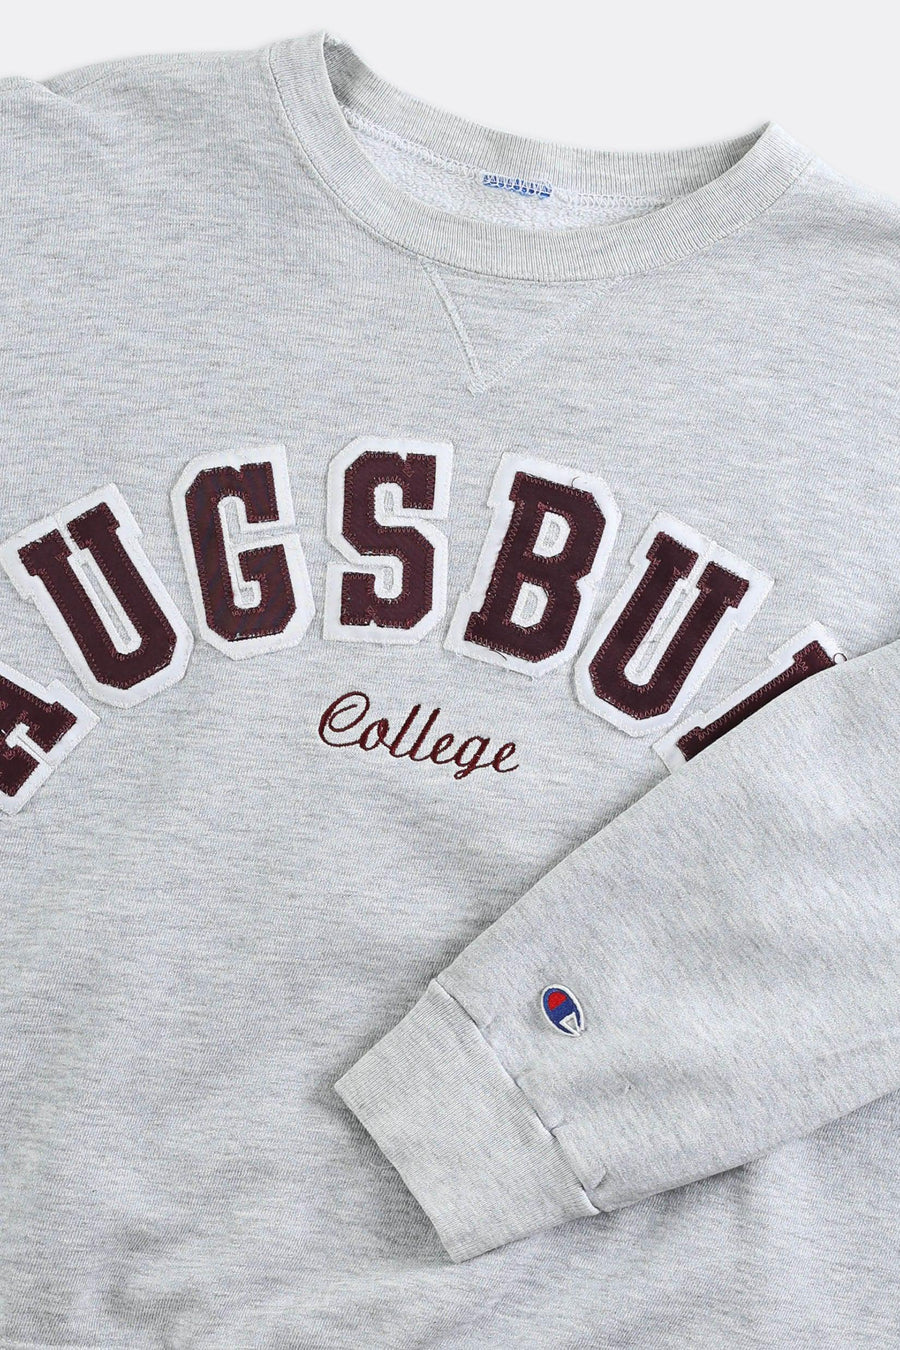 Vintage Ausburg College Sweatshirt